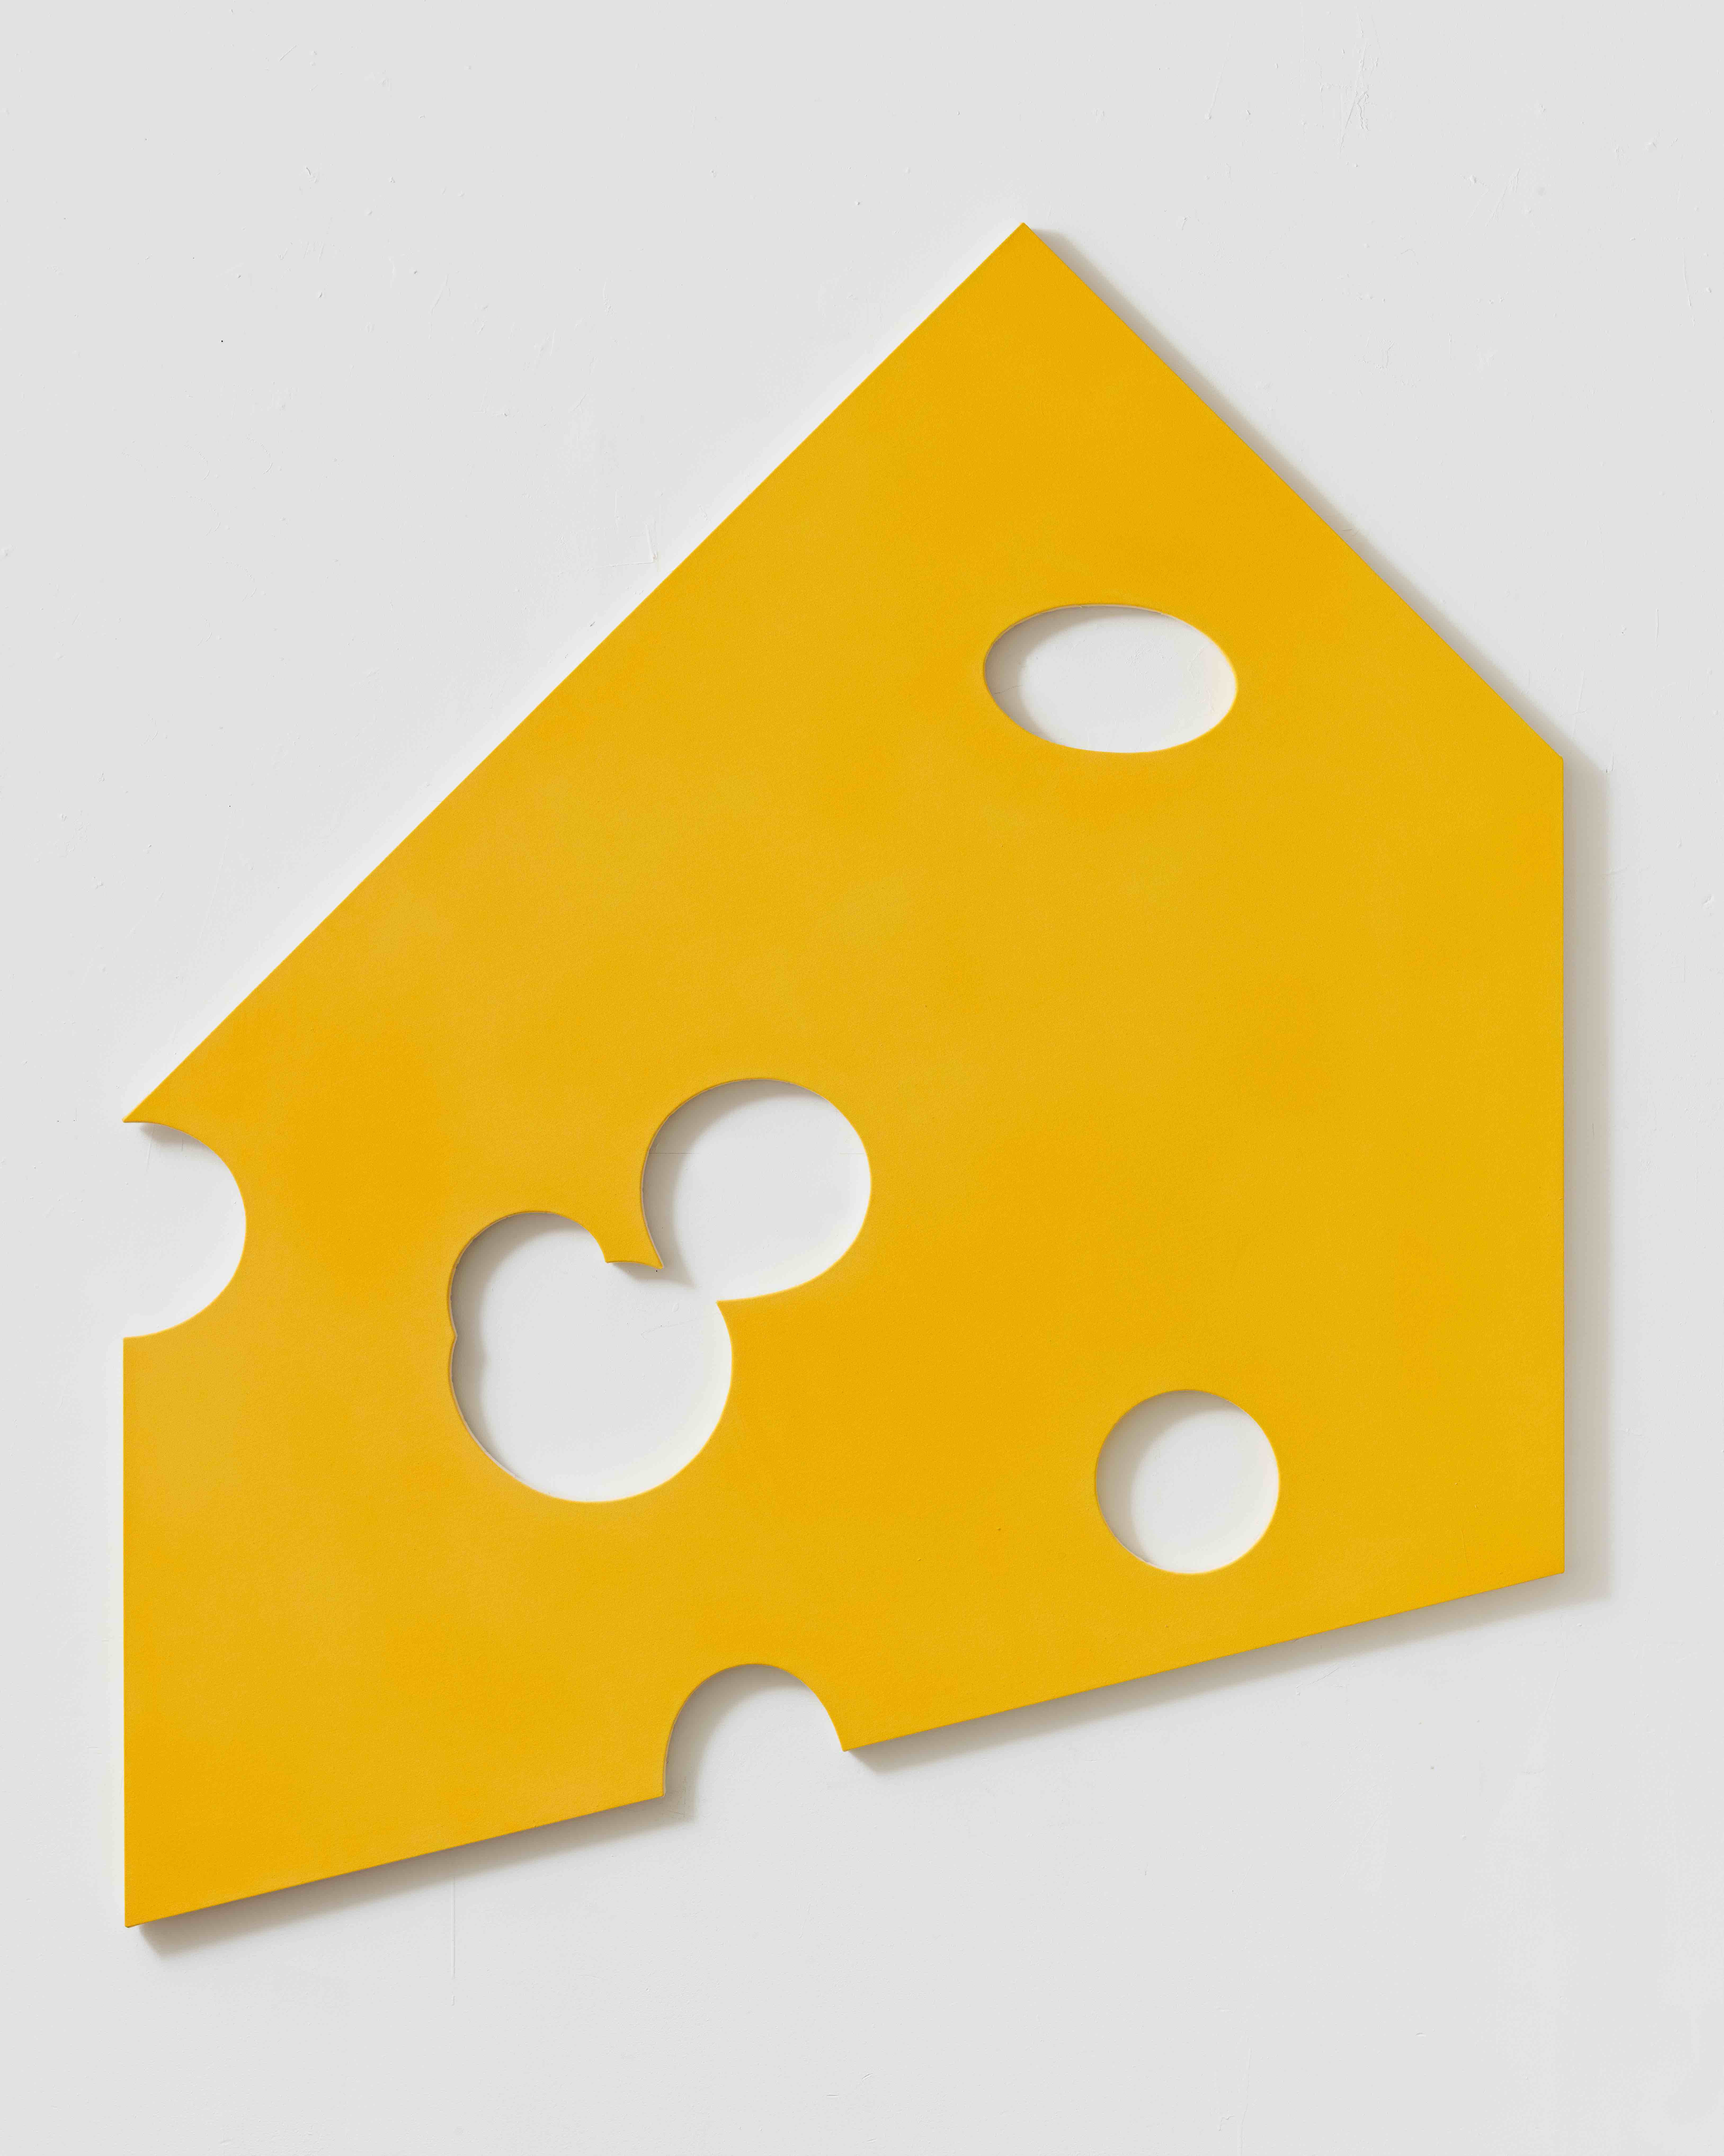 Yellow Swiss Cheese, 2012